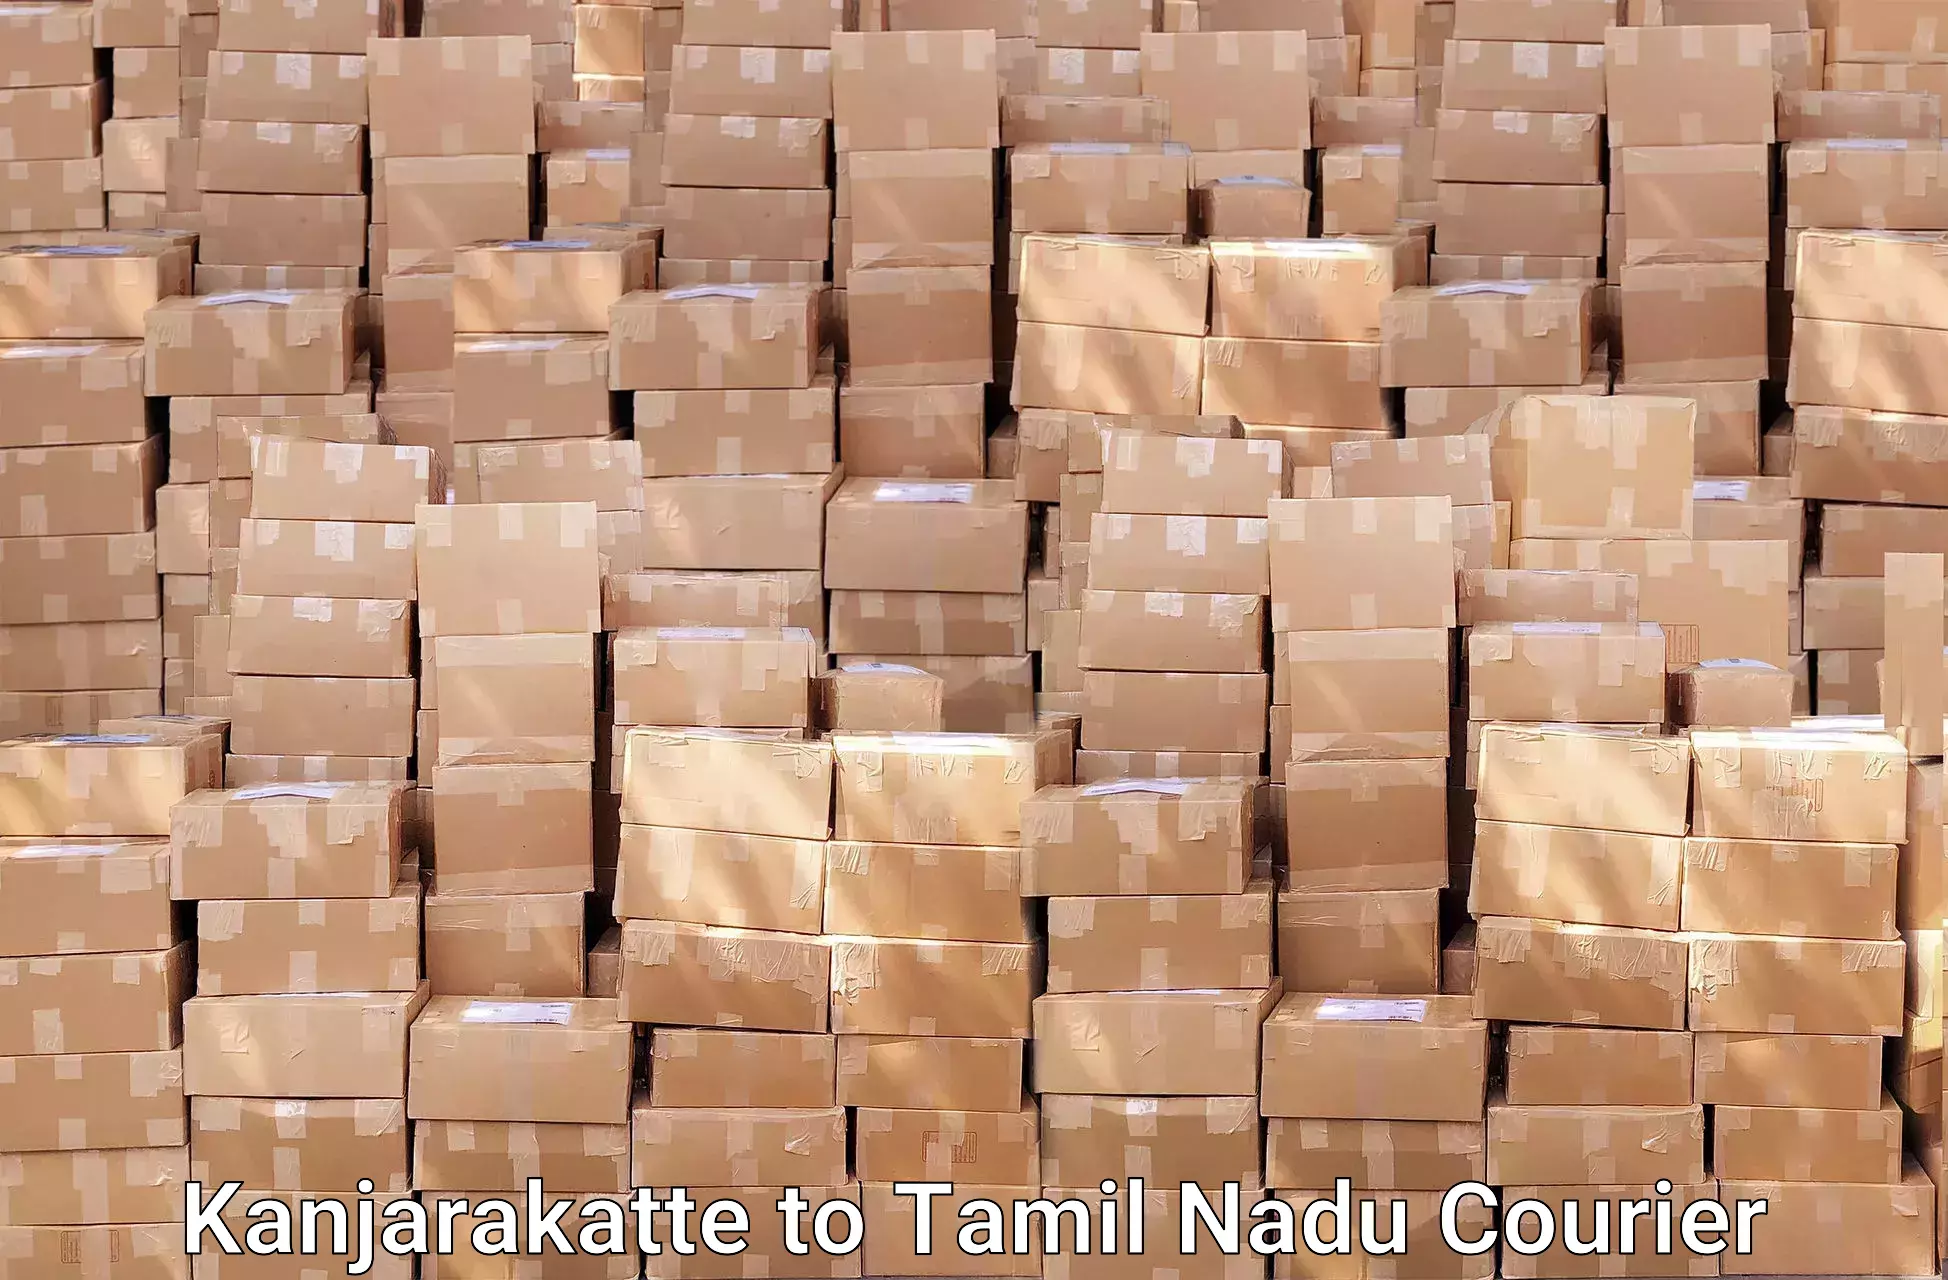 Furniture moving plans Kanjarakatte to Tamil Nadu